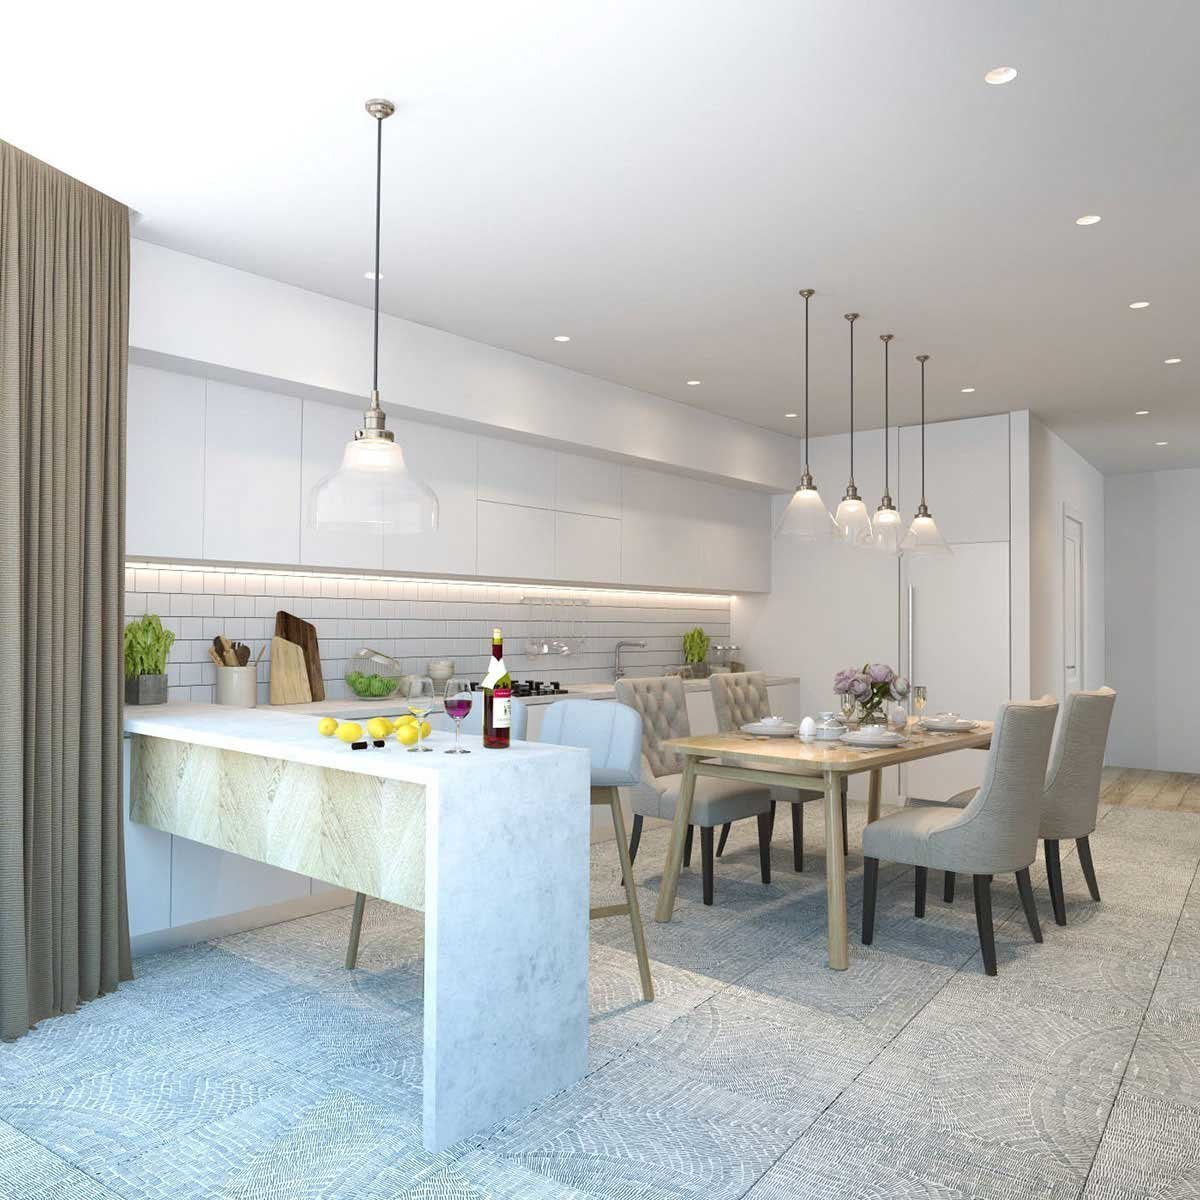 Дизайн белой кухни гостиной. Кухня гостиная светлая современная. Кухня столовая в современном стиле светлая. Кухни остинеые саетоые. Светлый интерьер кухни гостиной.